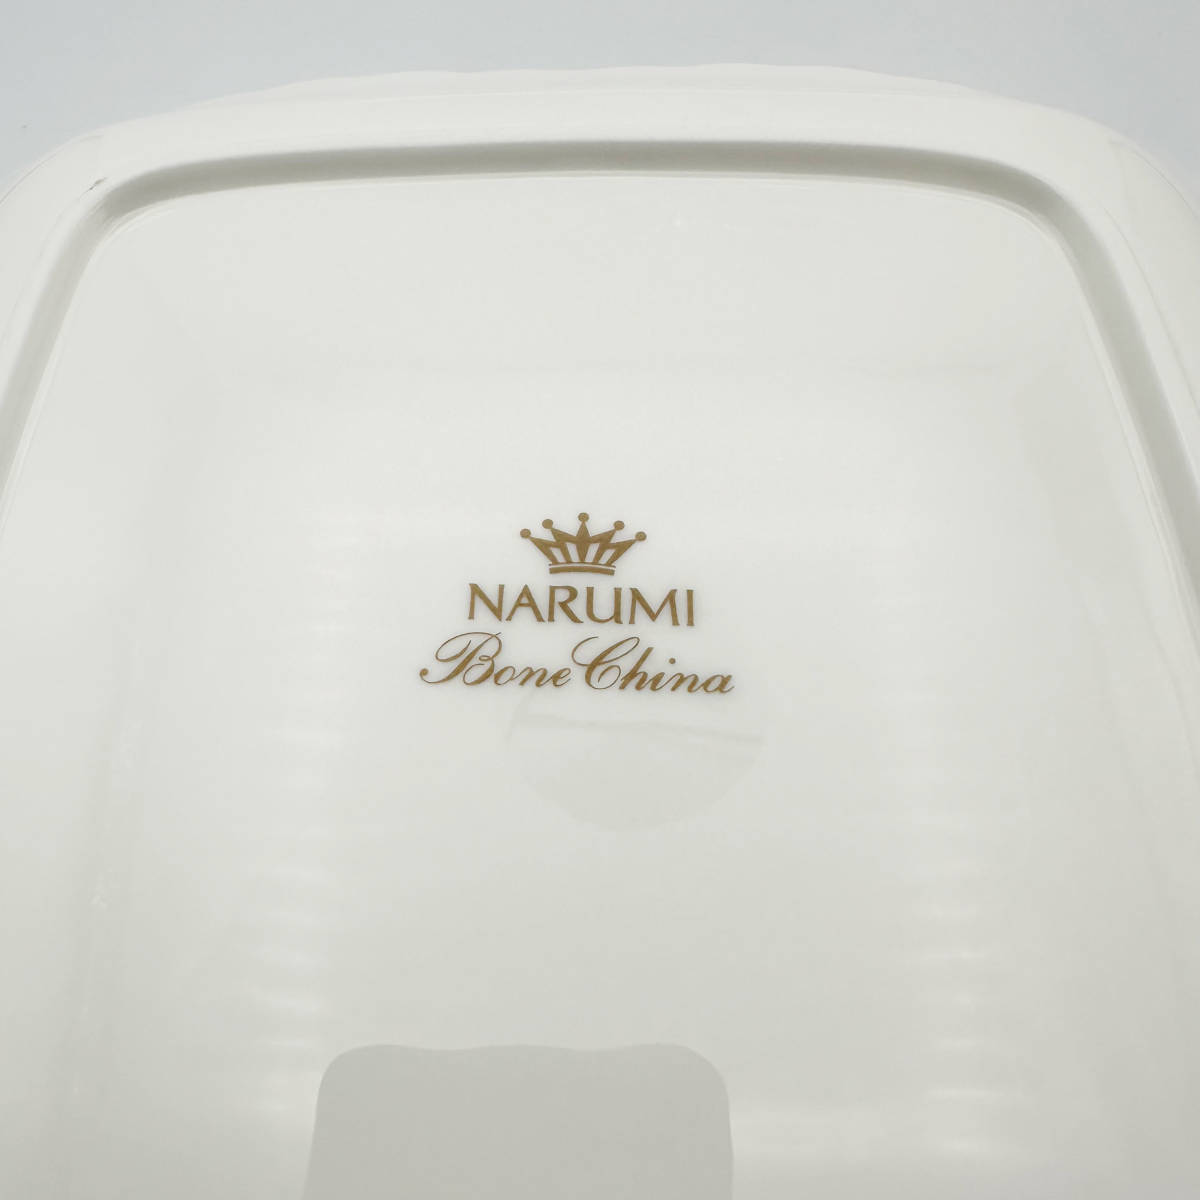 T158 未使用 NARUMI ペア スクエアプレート 白 食器 大皿 箱入 BONE CHINA ボーンチャイナ シルキーホワイト ナルミ_画像3